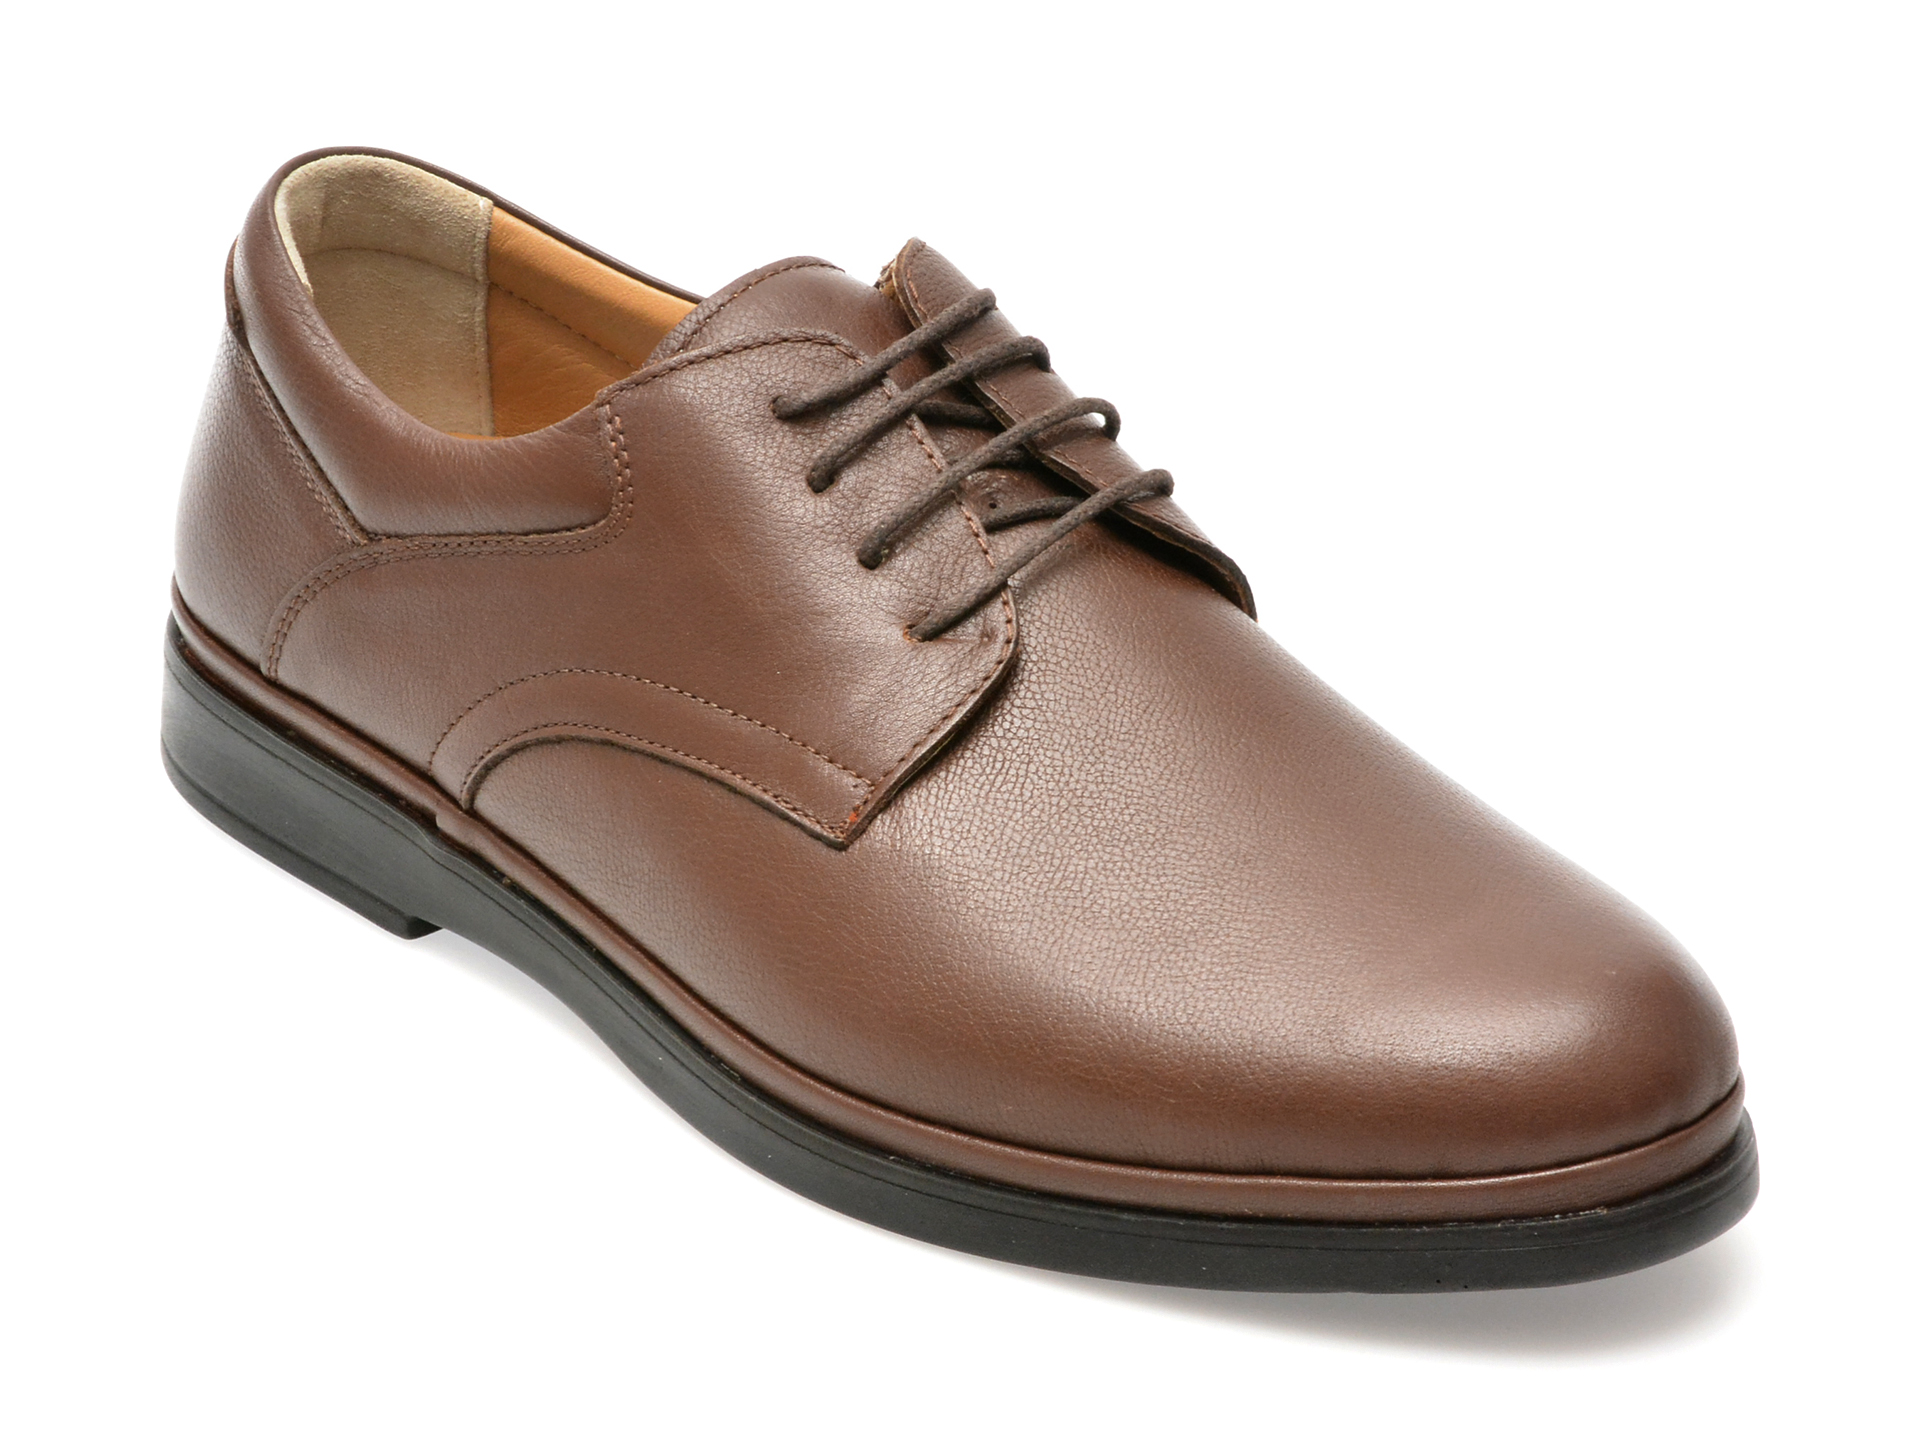 Pantofi AXXELLL maro, SH303, din piele naturala